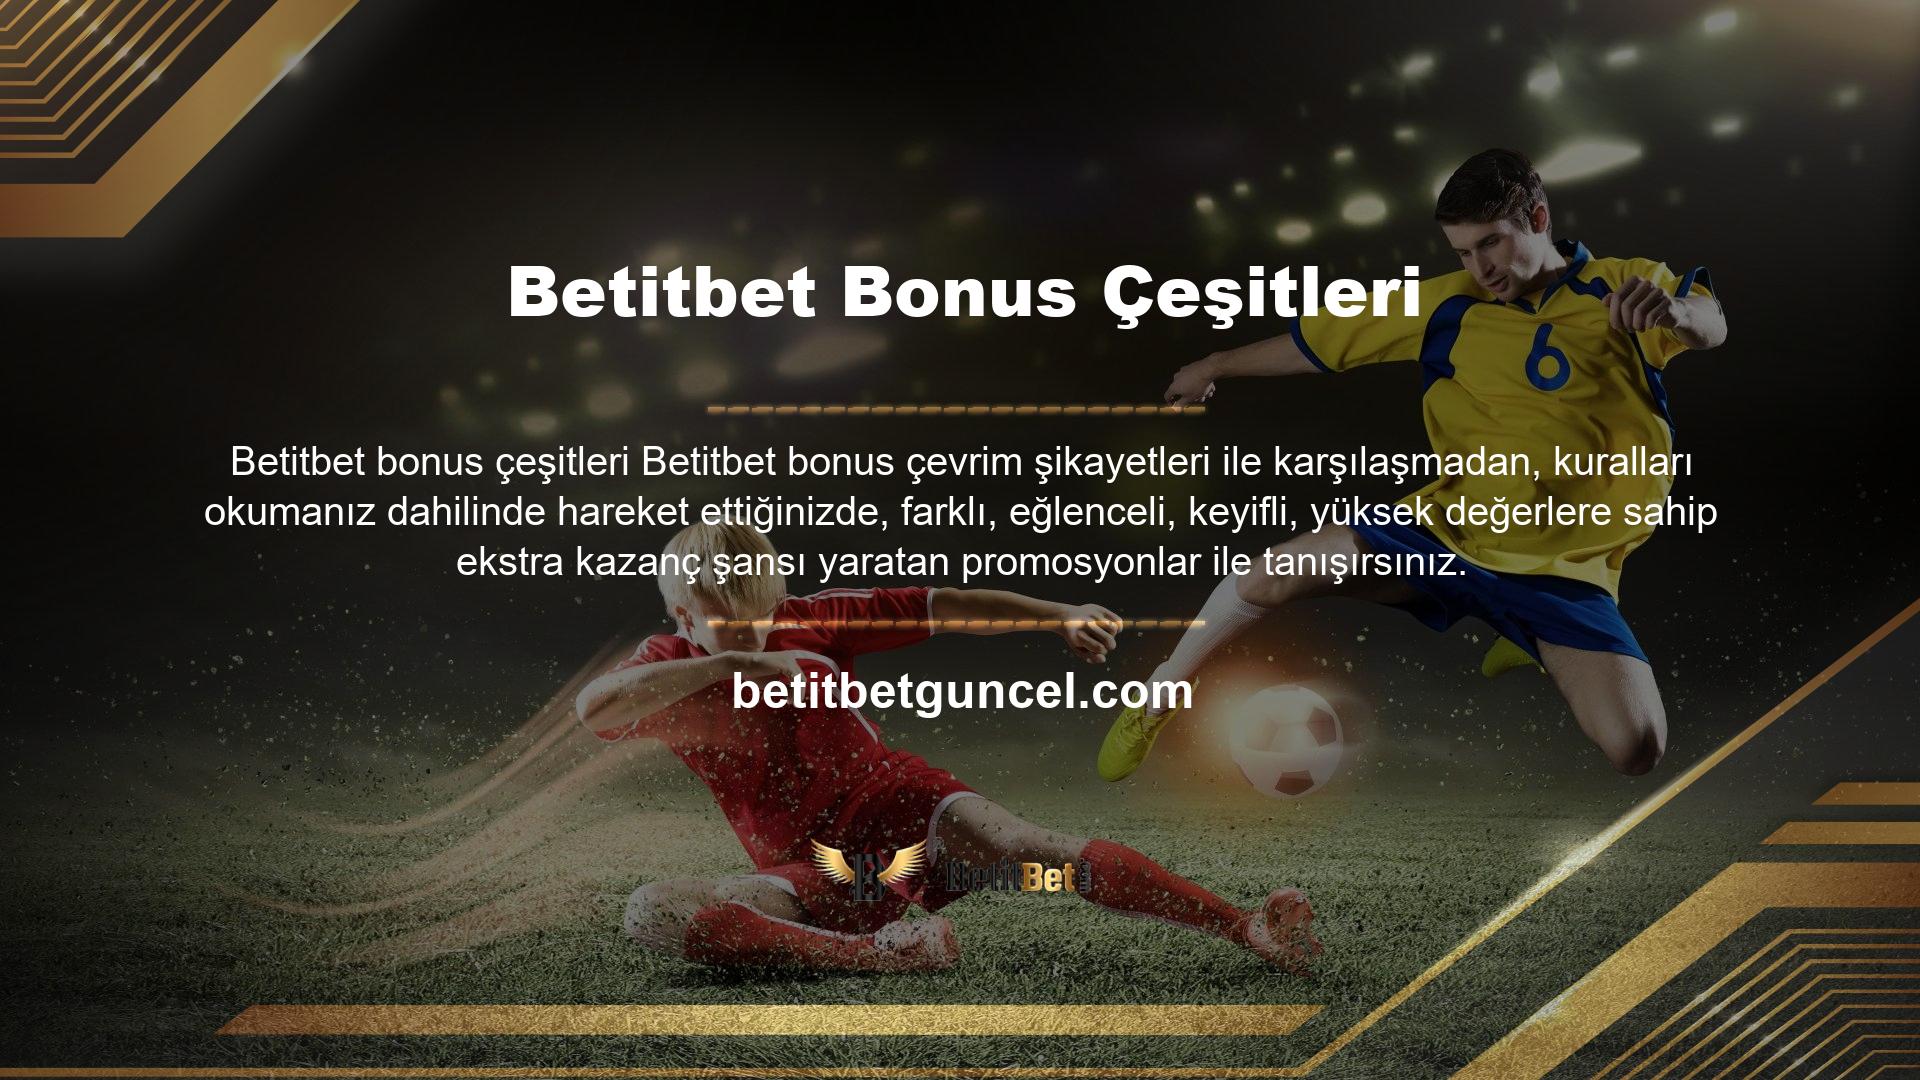 Betitbet bonus çeşitleri konusunda, spor bahislerini, casino oyunlarını, sanal bahis seçeneklerini ve okey oyunlarını sisteme dahil etmiştir